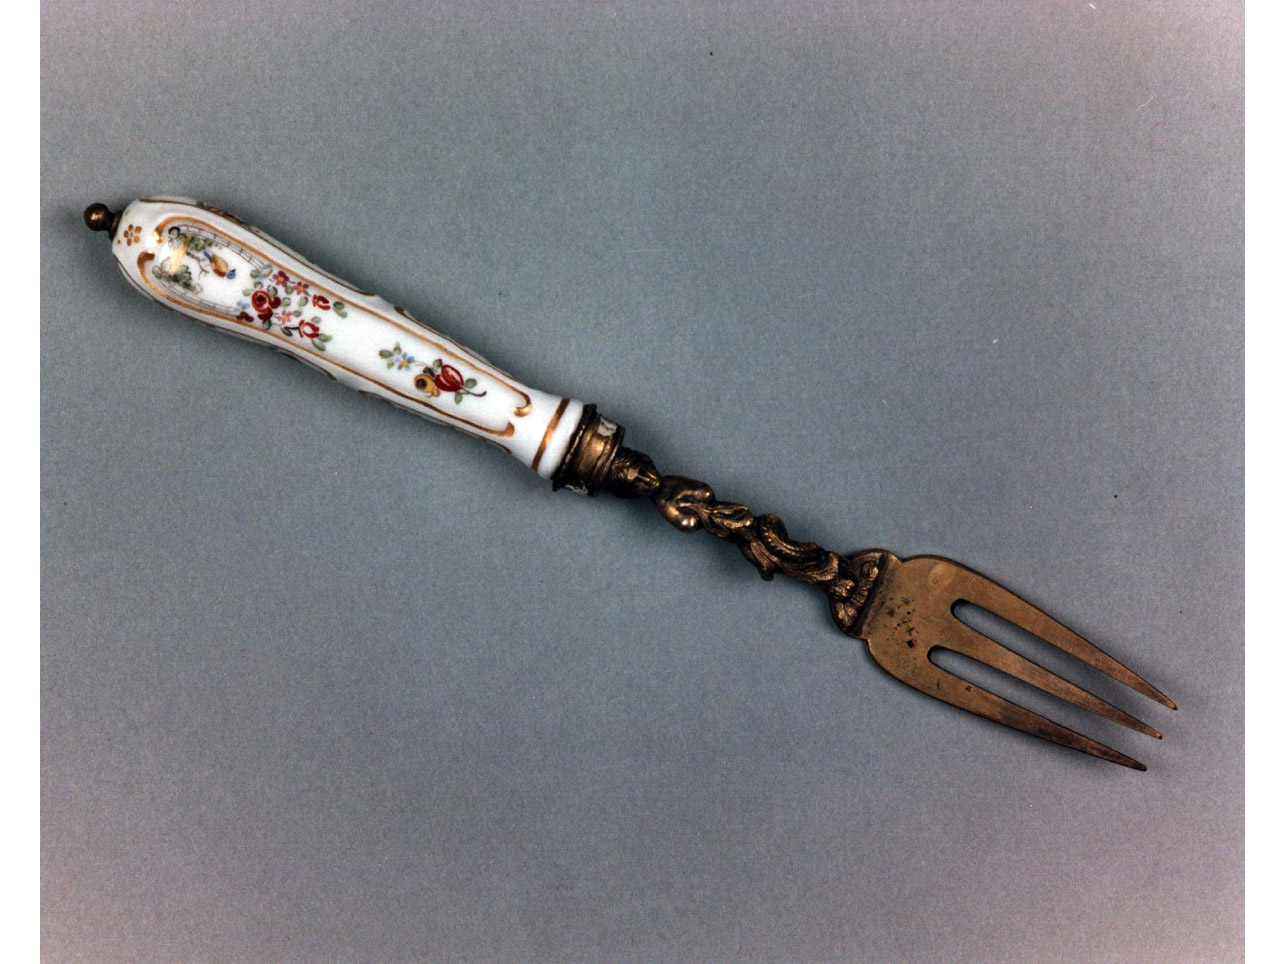 motivi decorativi floreali (forchetta) - produzione di Chantilly (sec. XVIII)